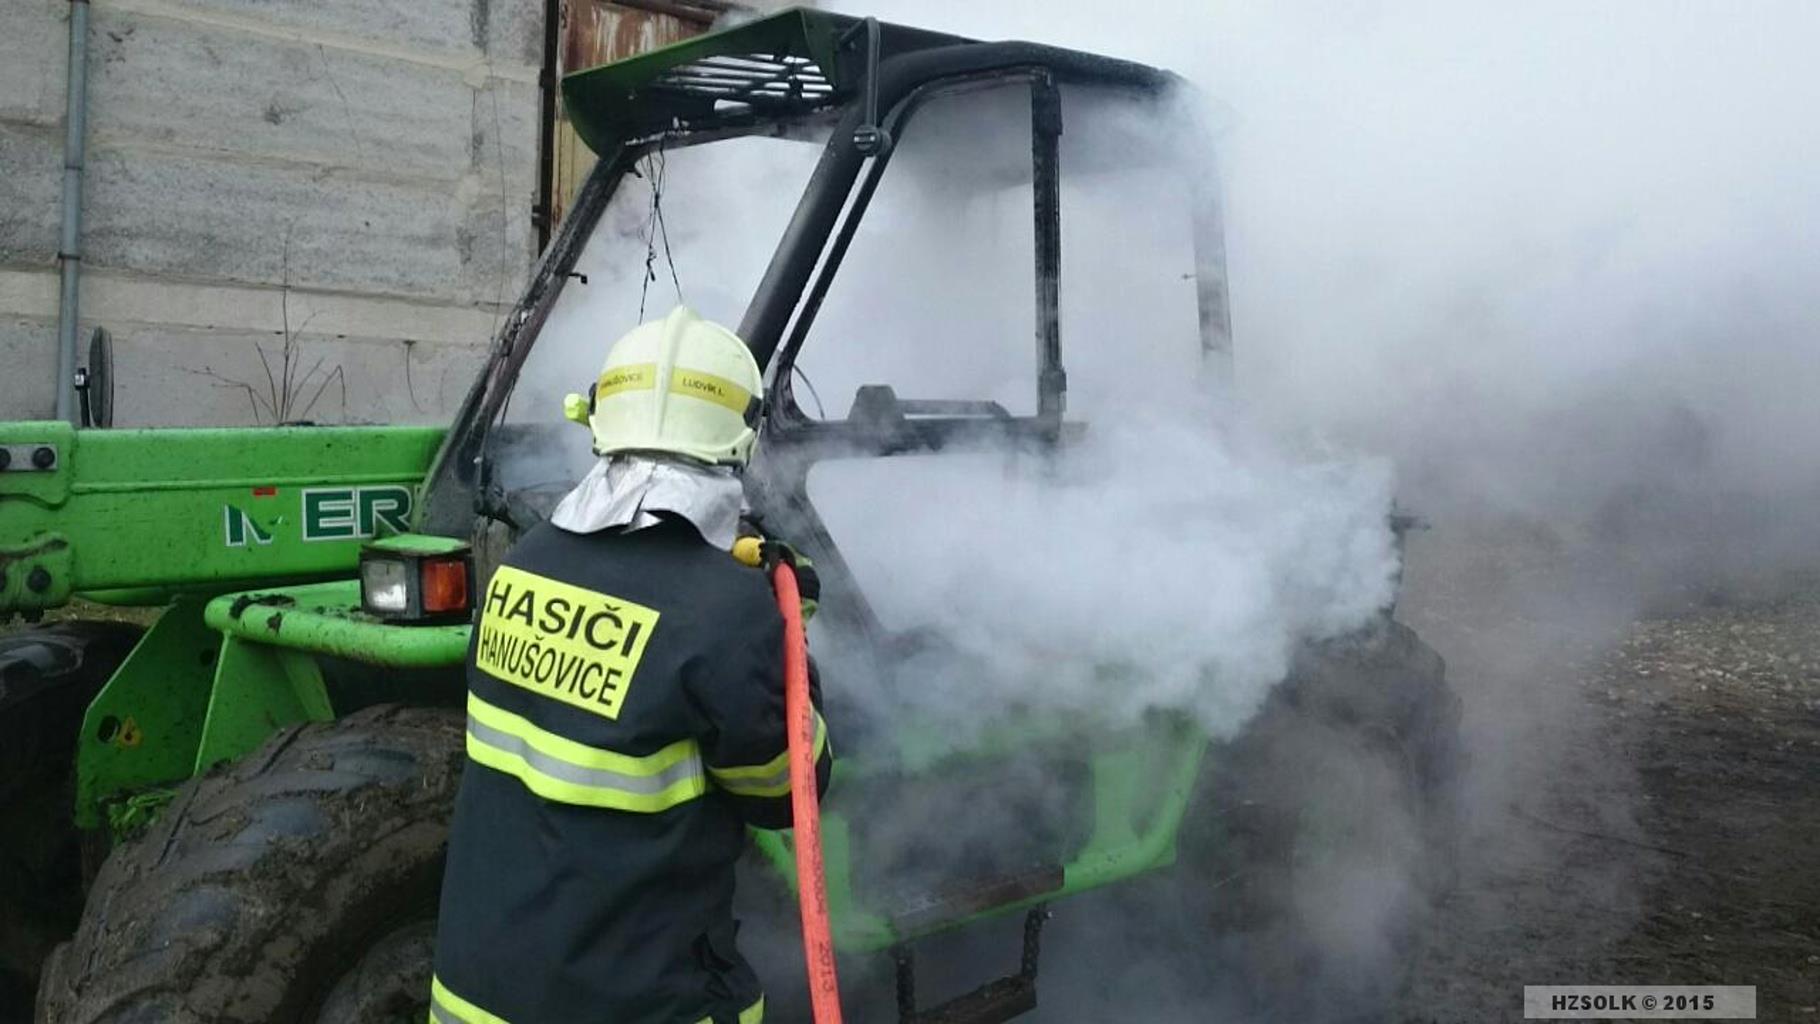 13-11-2015 Požár traktorového nakladače Vysoké Žibřidovice_1.jpg